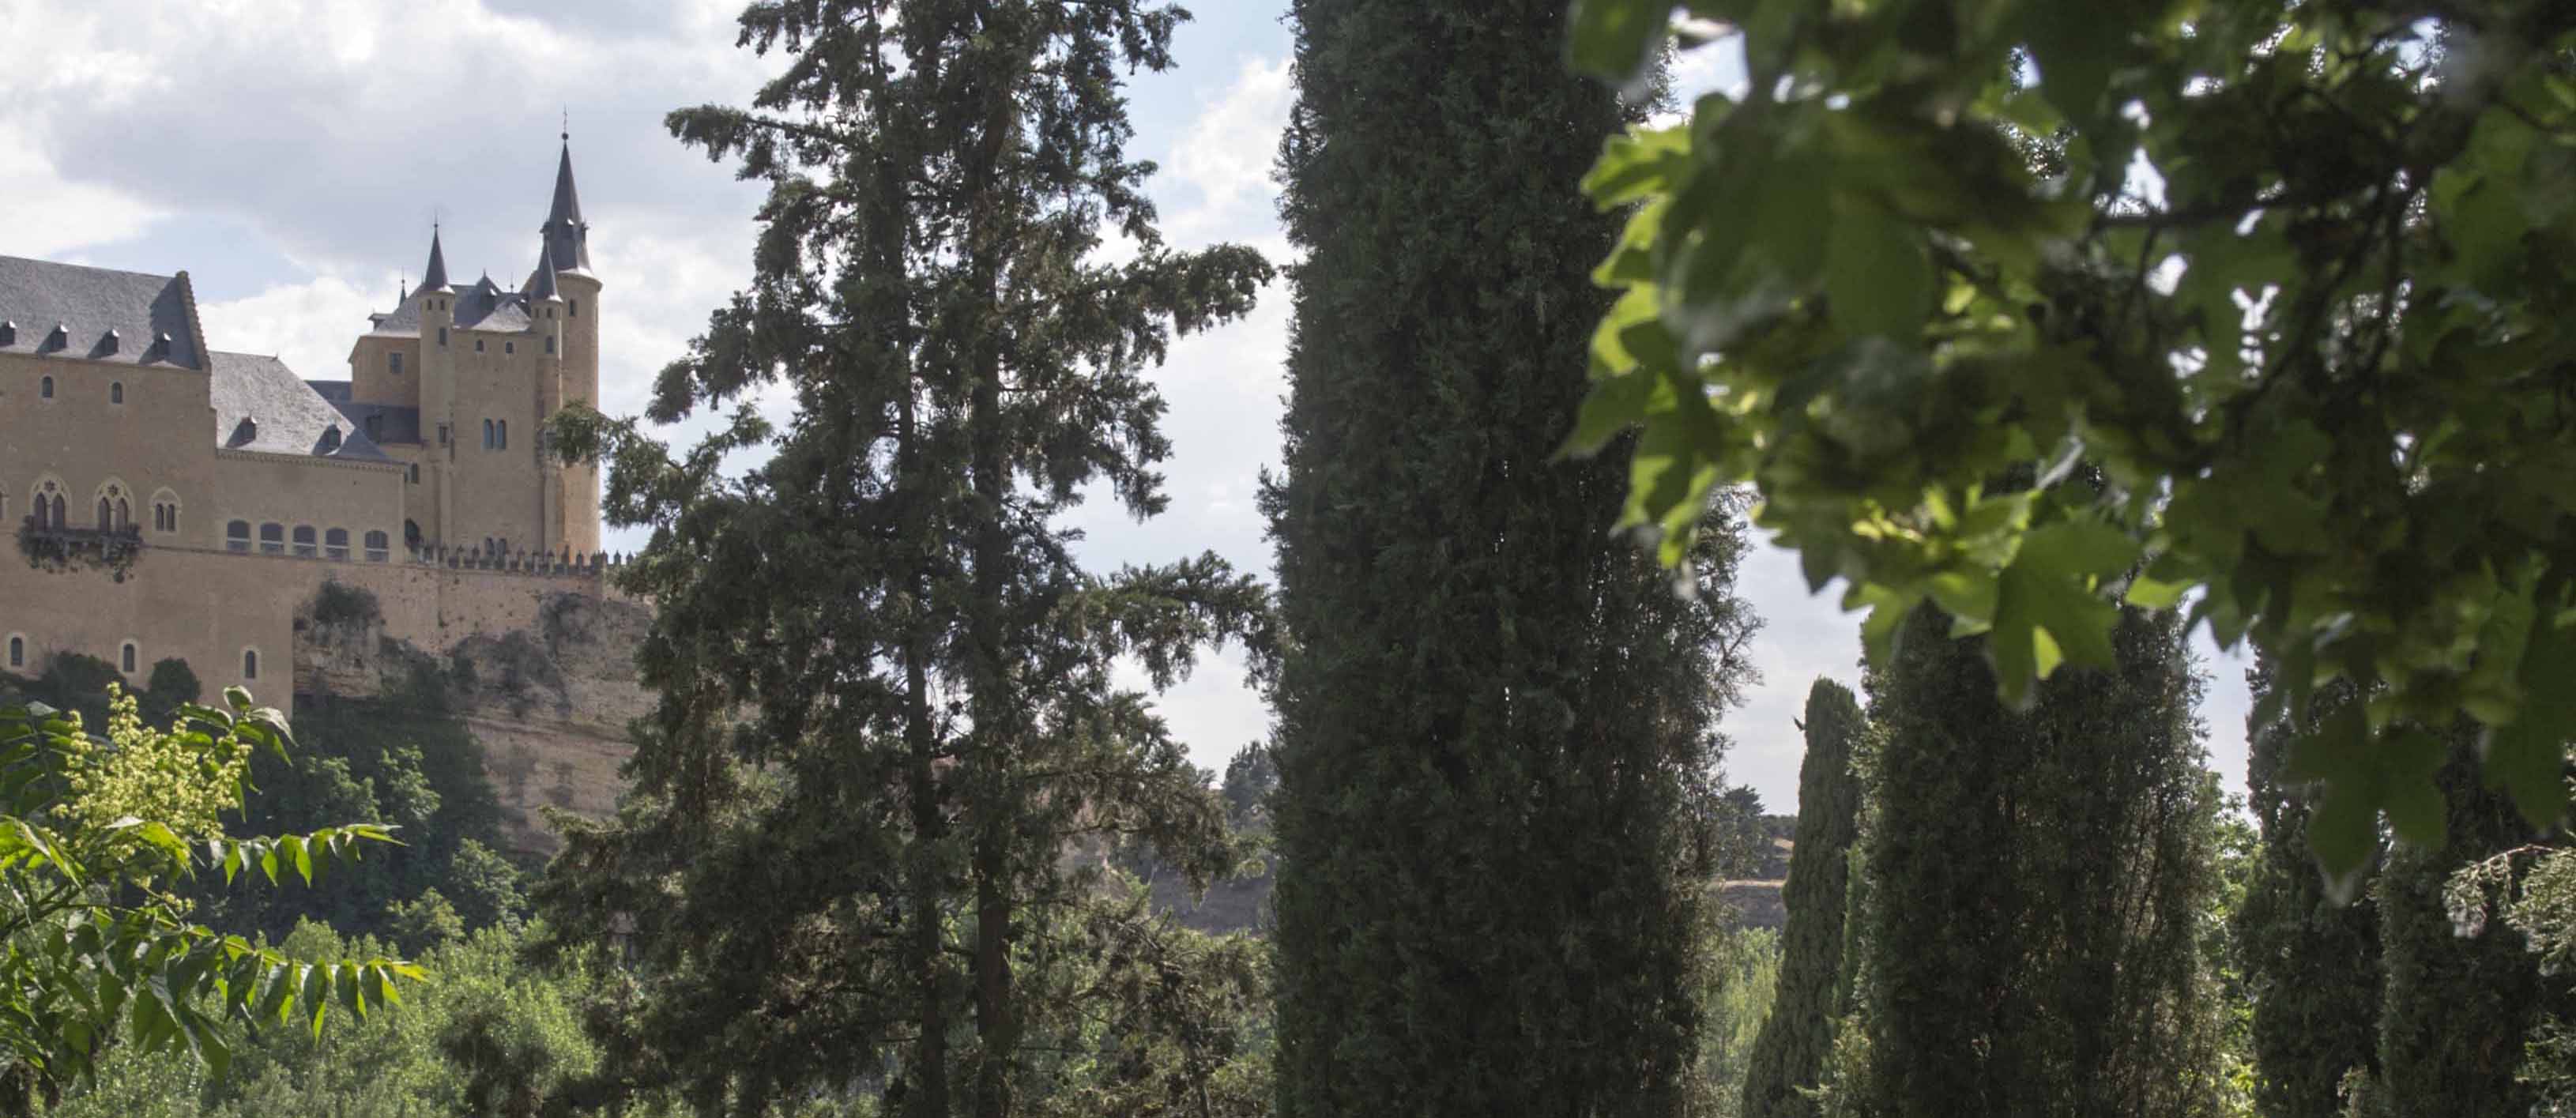 Turismo de Segovia asume la gestión del espacio con el fin de facilitar su apertura a las visitas y ofrecer un nuevo espacio de interés para el turista en la zona del valle del Eresma, en creciente demanda. Las entradas comenzarán a venderse a partir del 1 de julio en la web www.turismodesegovia.com y de manera presencial en&nbsp;la Real Casa de Moneda. Además, se ofrecerá una visita guiada todos los viernes a las 11:00 horas como parte de la campaña de visitas guiadas ‘Conoce Segovia Verano’.
